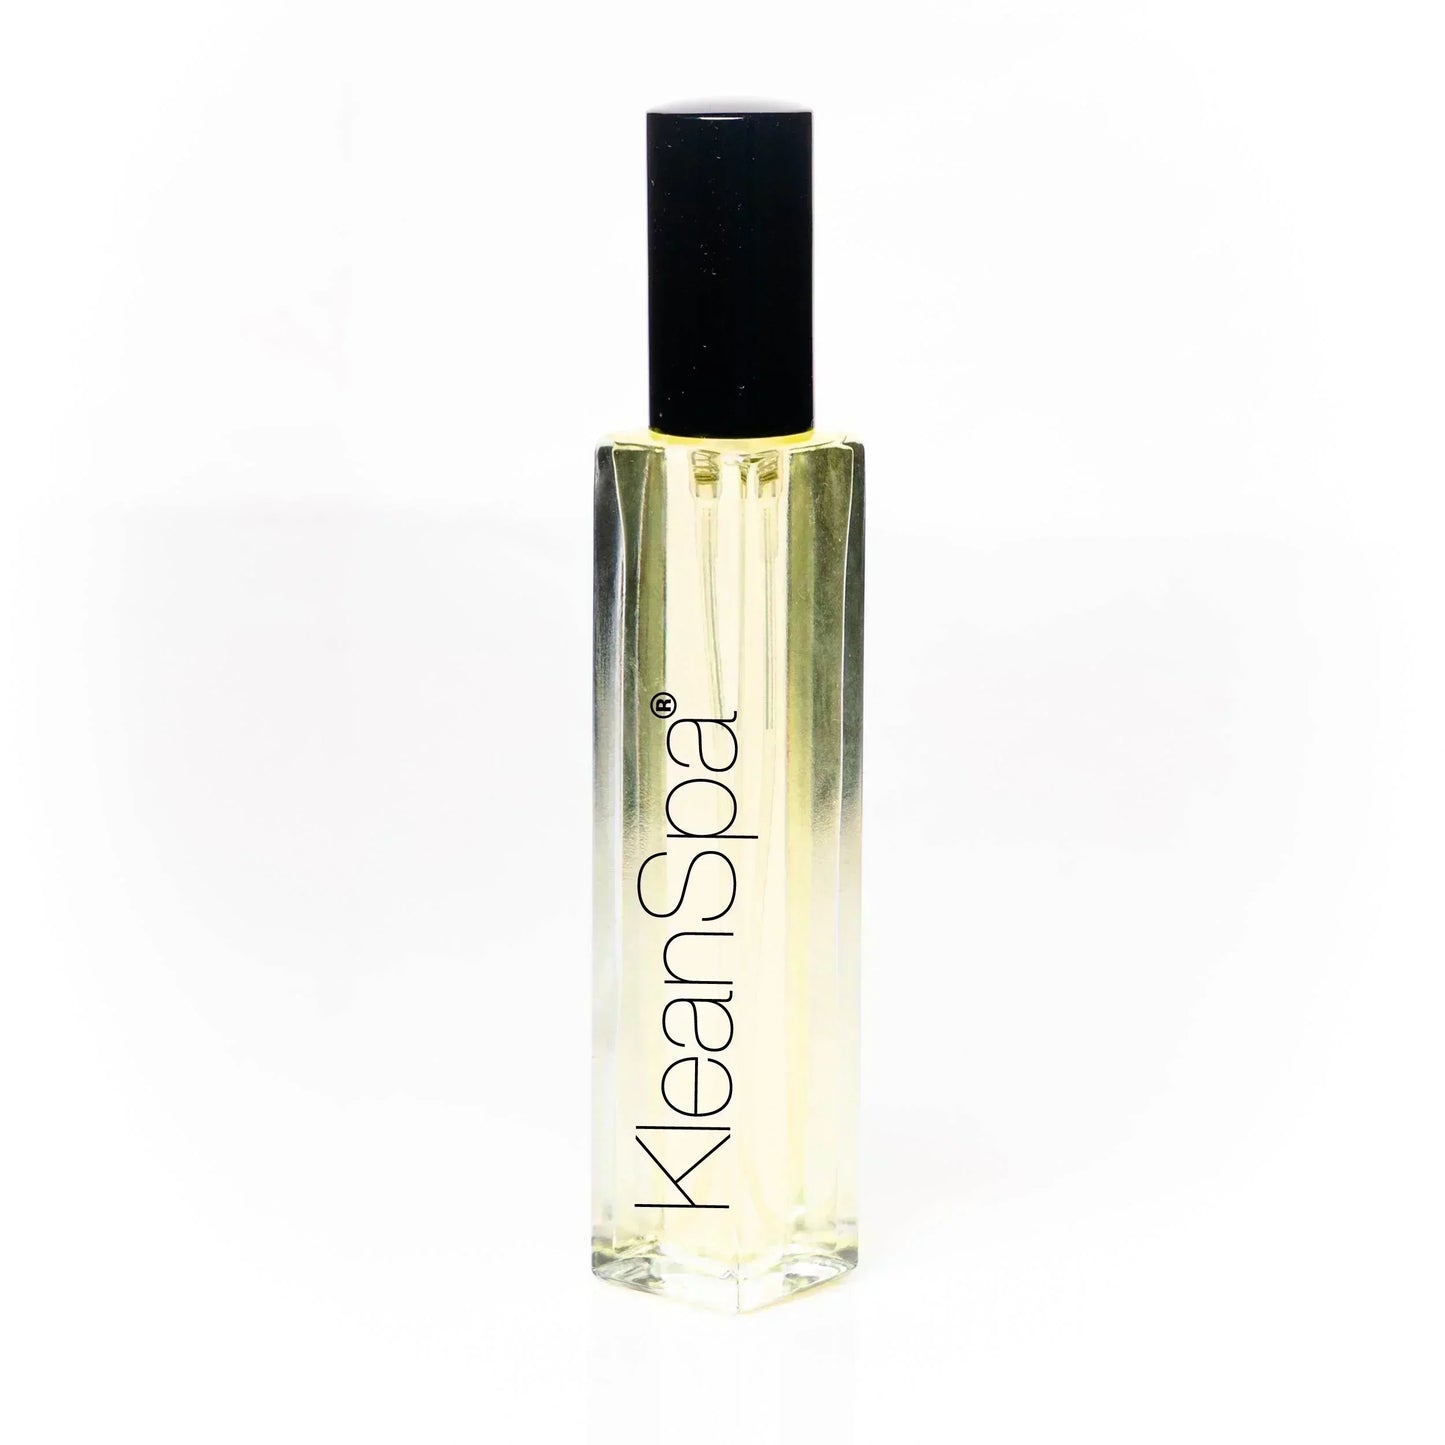 Extrait de Parfum (35% fragrance): Lemon Love